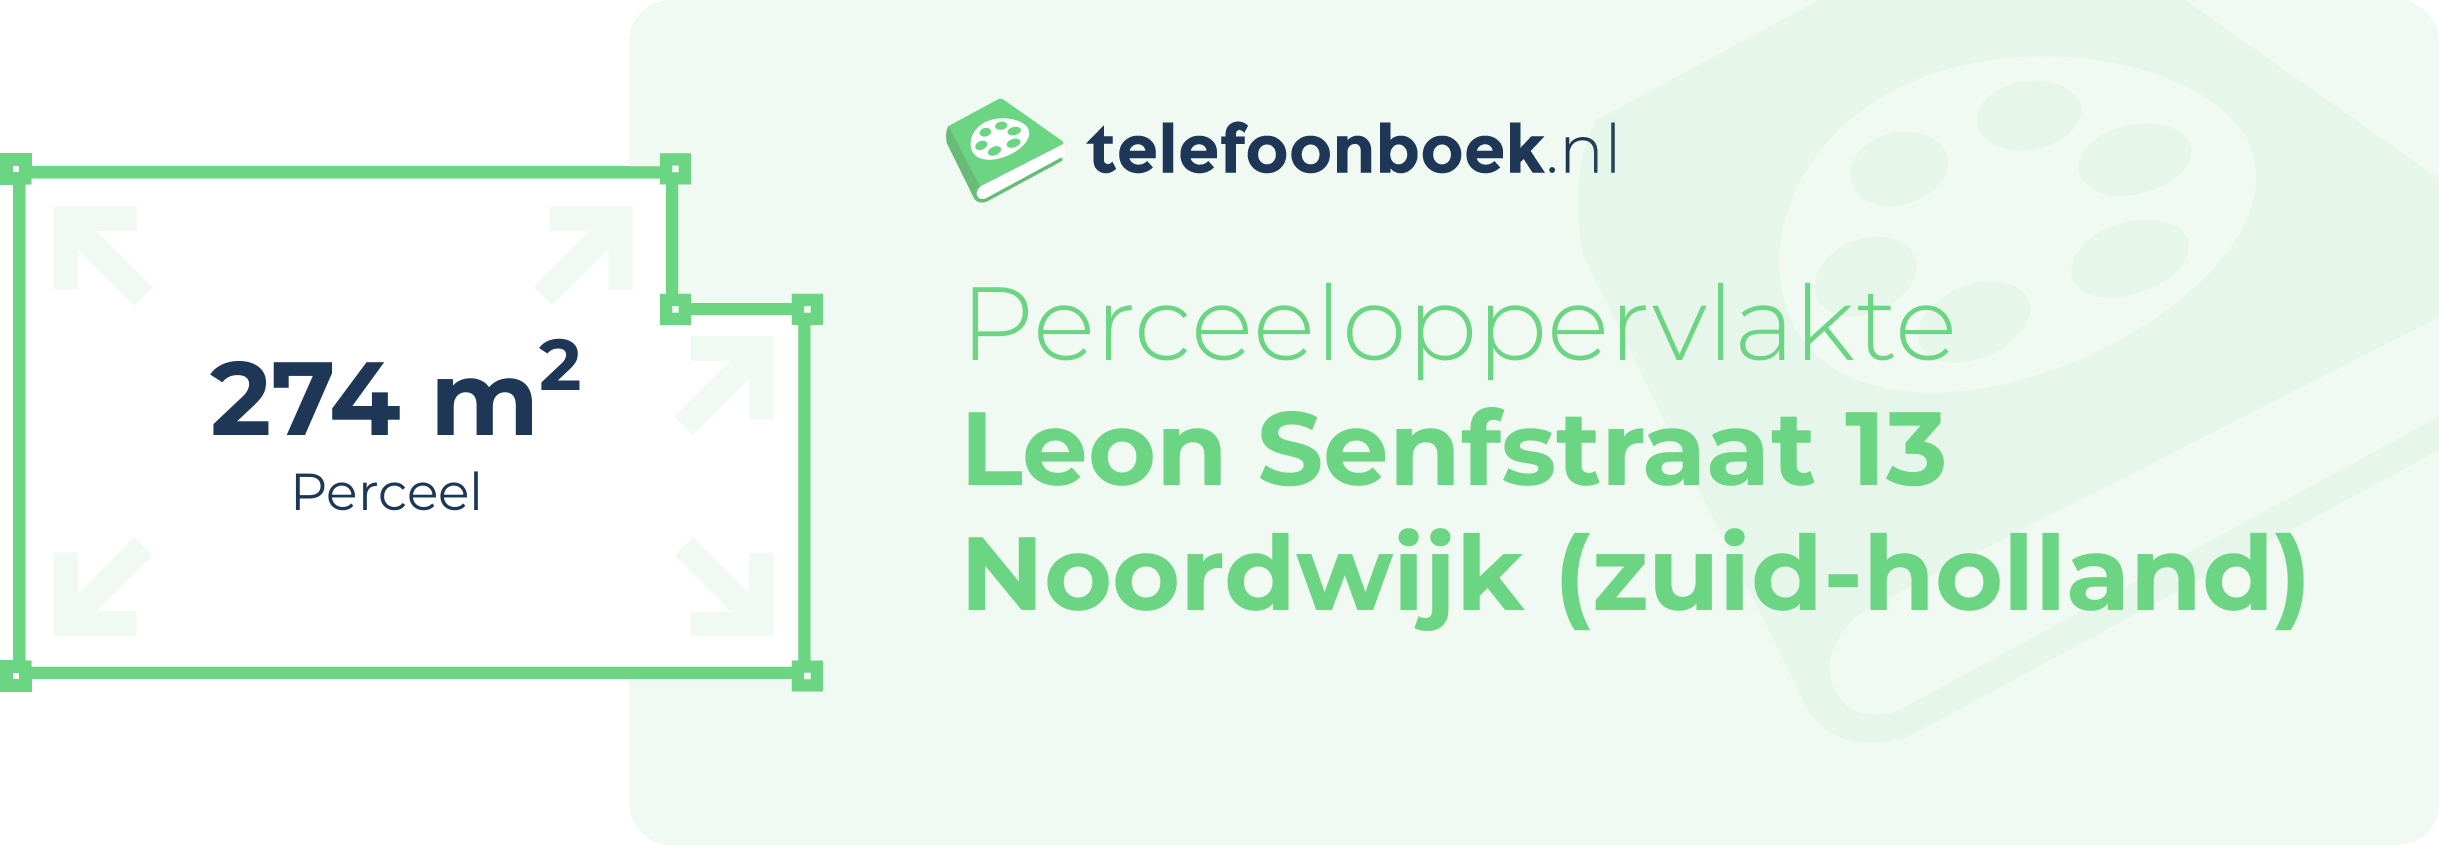 Perceeloppervlakte Leon Senfstraat 13 Noordwijk (Zuid-Holland)